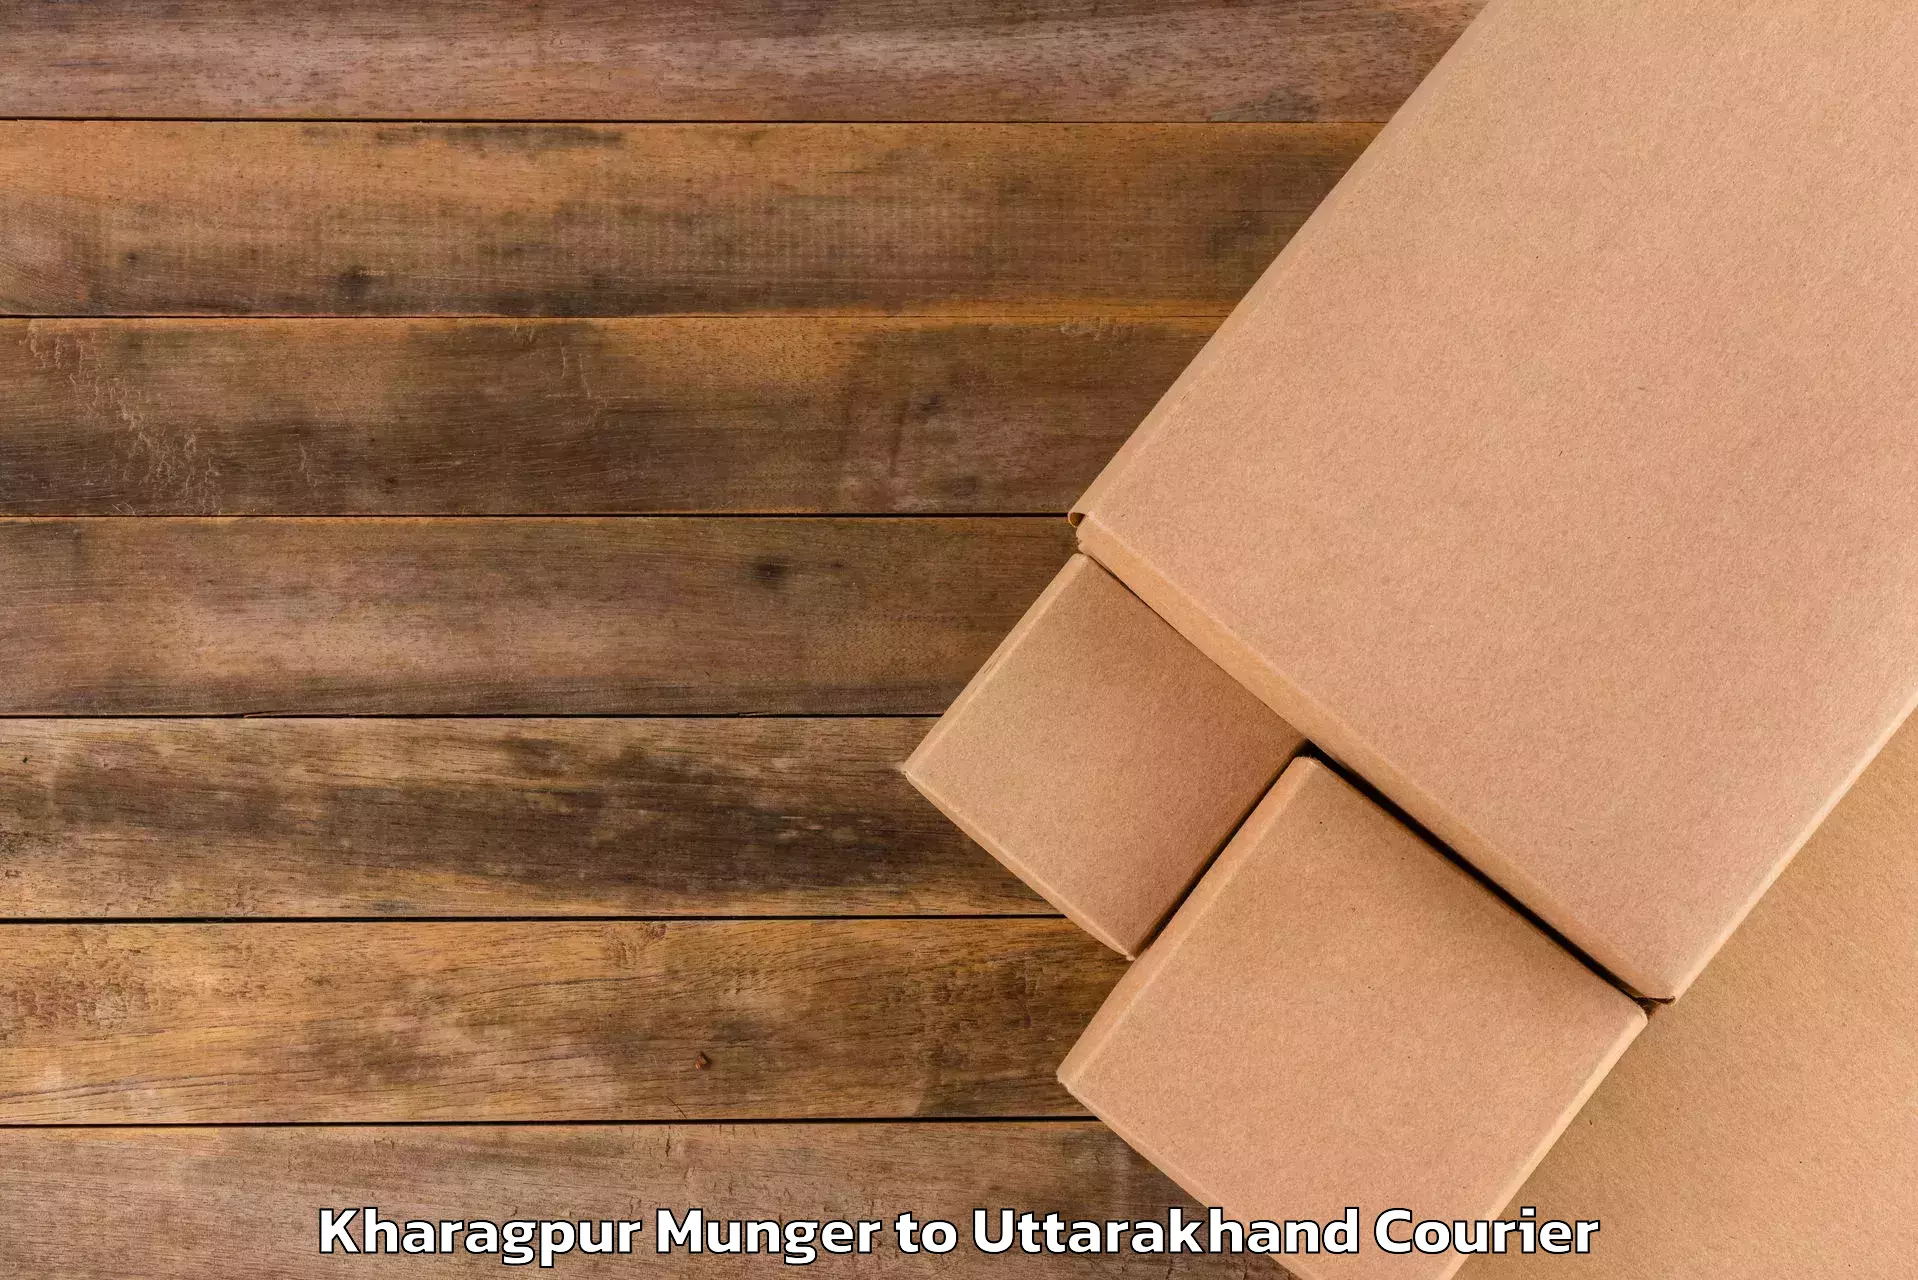 Baggage courier rates Kharagpur Munger to Gopeshwar